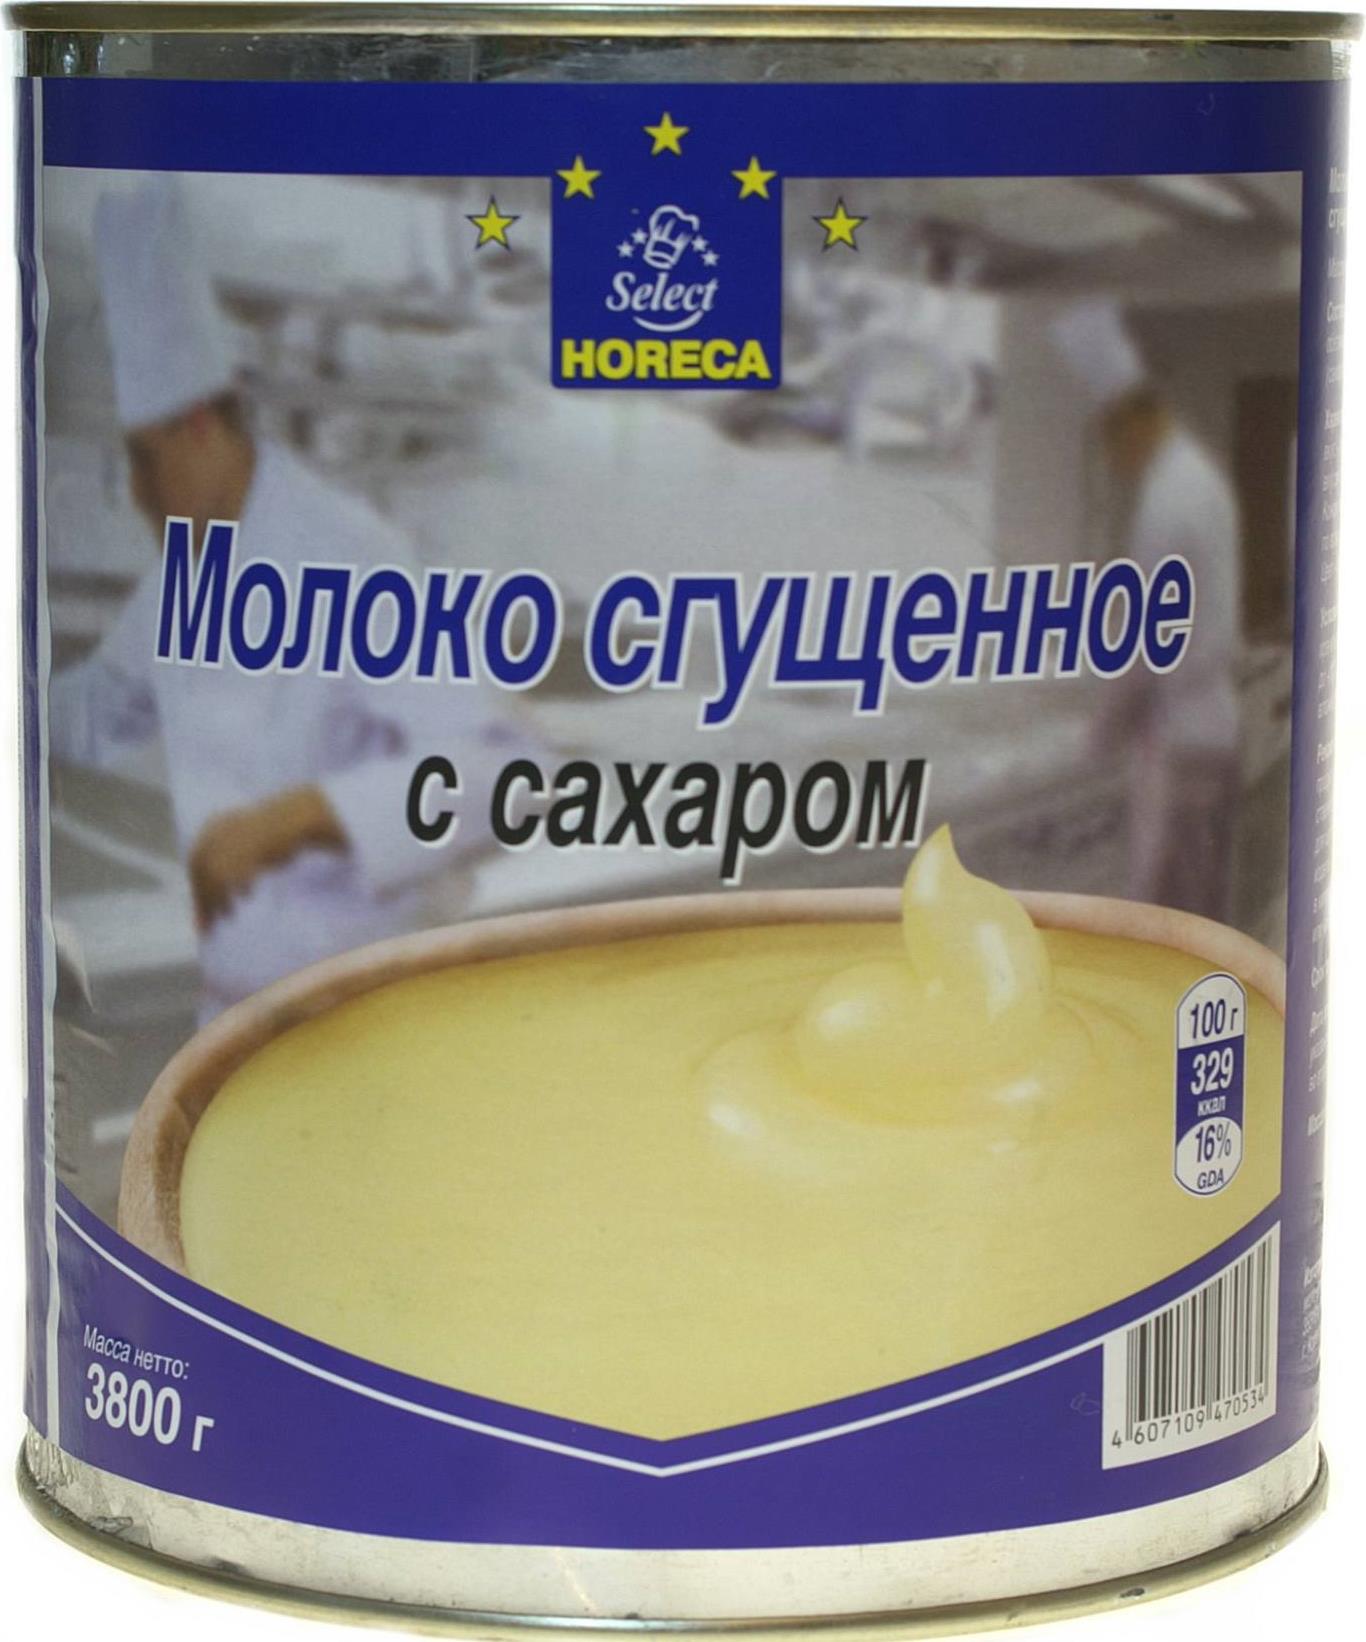 Сгущенное молоко Horeca Select